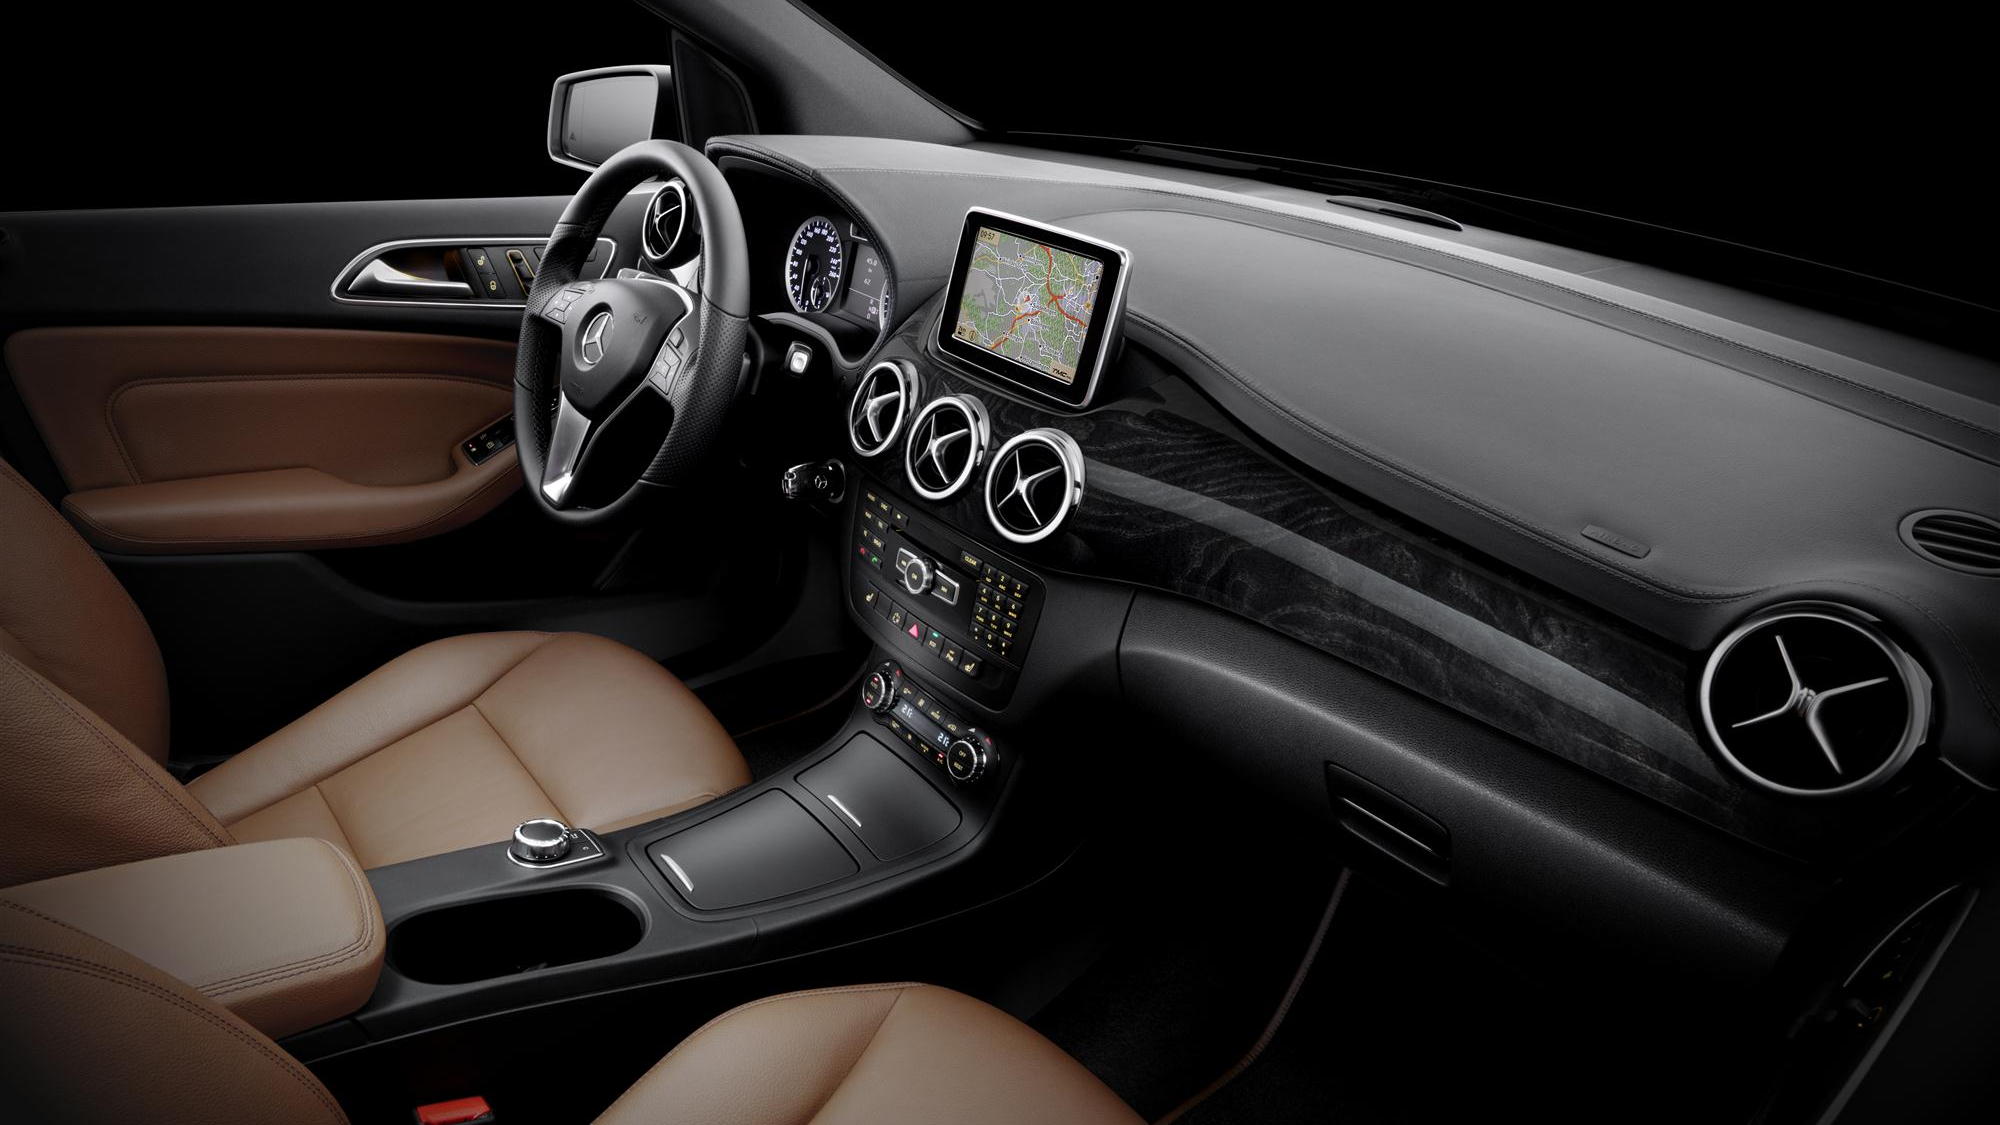 2012 Mercedes-Benz B-Class interior images